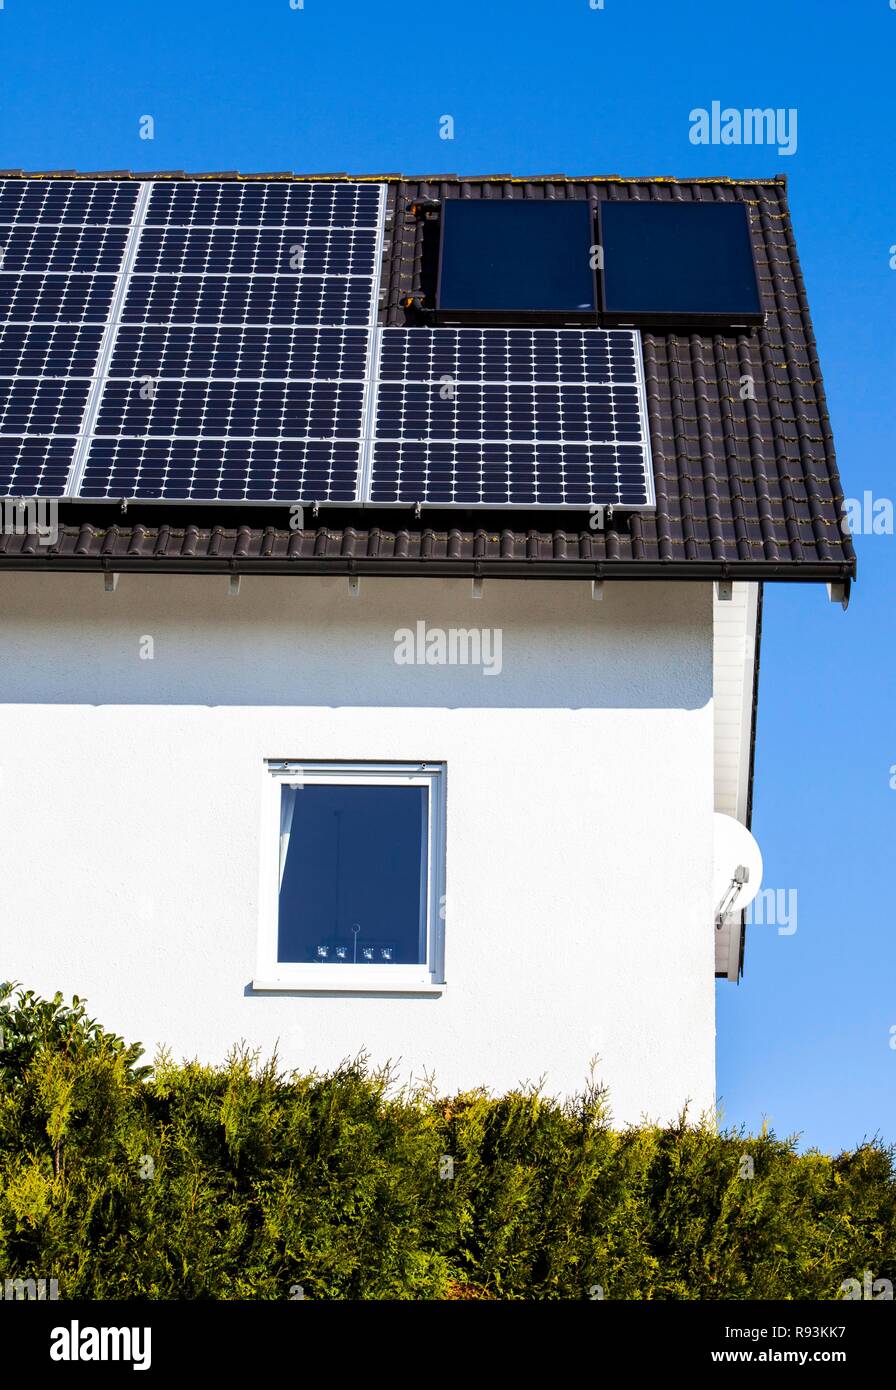 Dach eines Wohnhauses mit Solarzellen zur Stromerzeugung und thermische Solaranlagen für Warmwasser Stockfoto